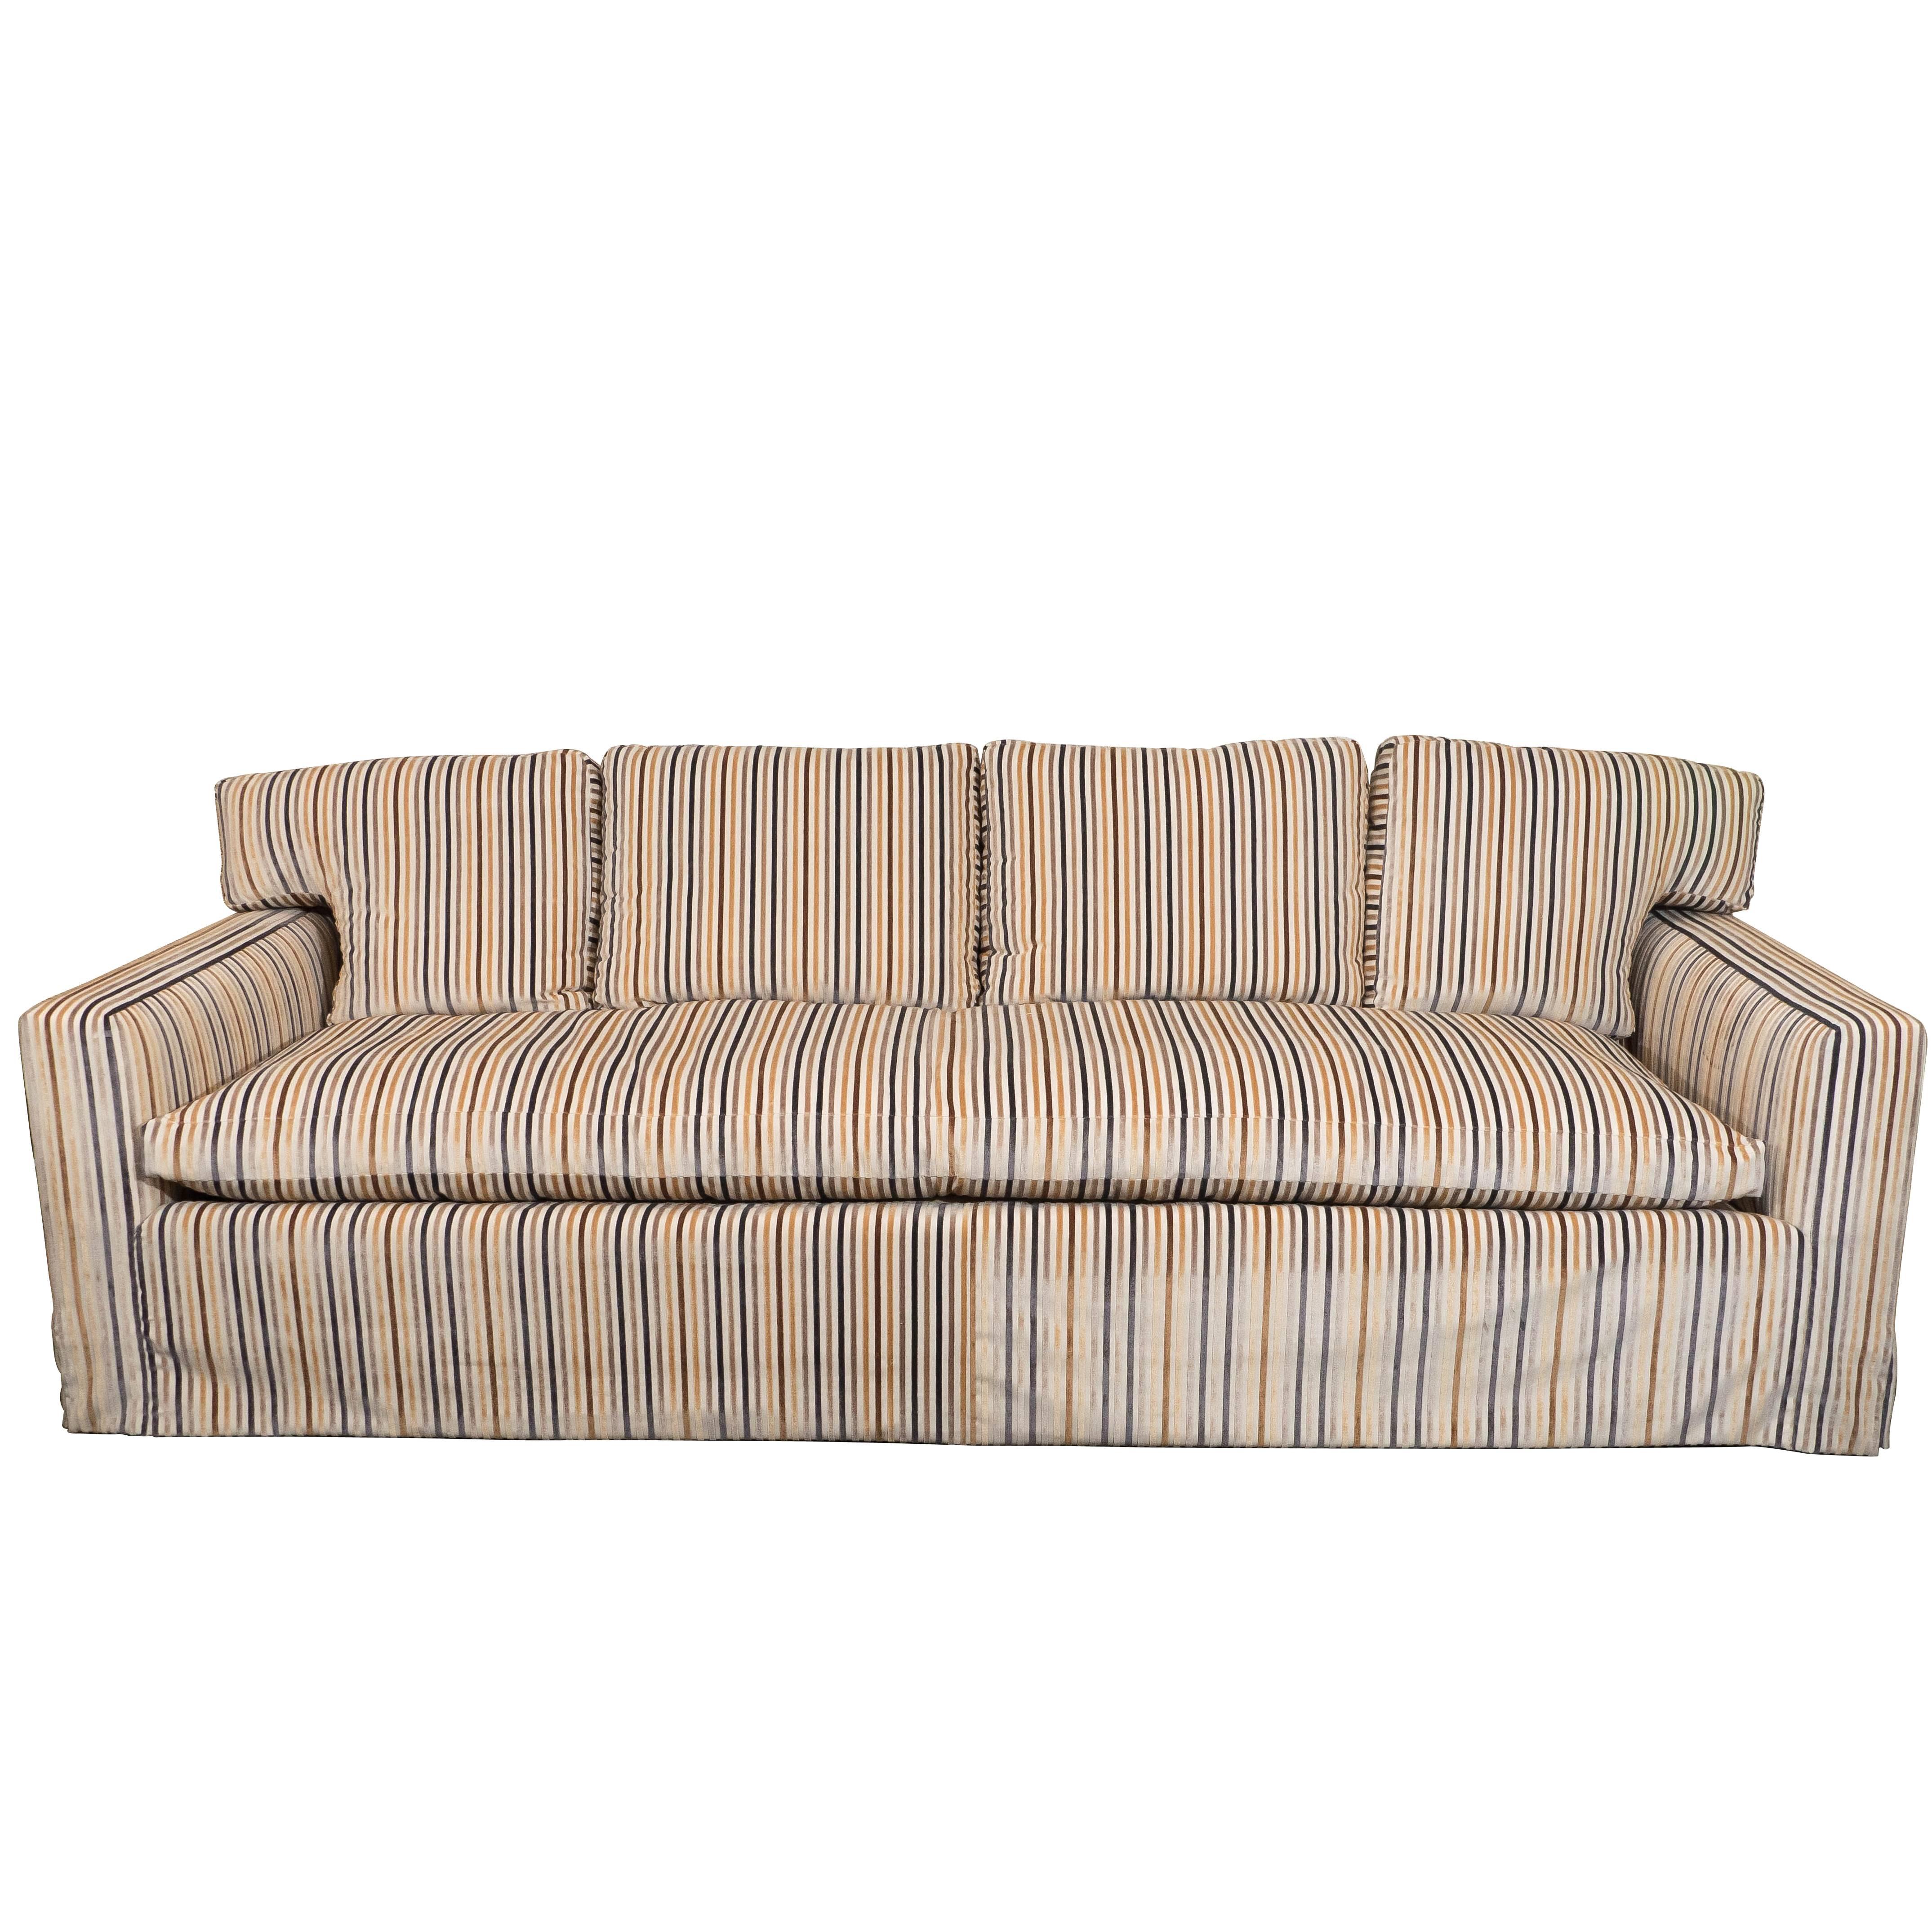 Midcentury Down Sofa in Striped Cut Velvet